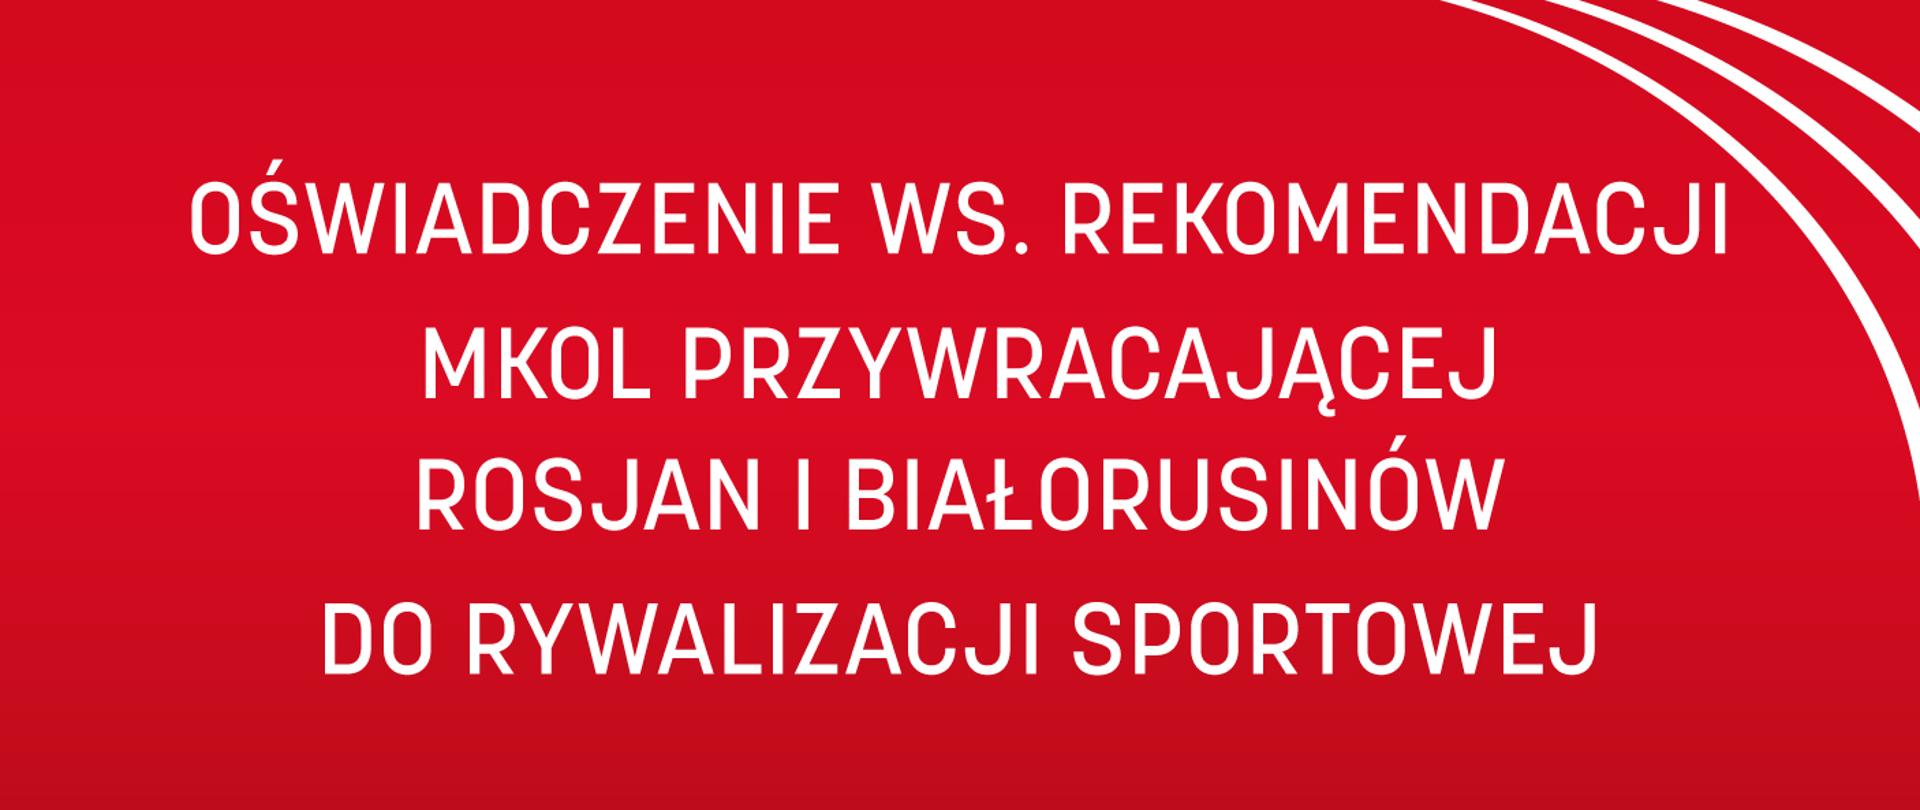 Oświadczenie w sprawie rekomendacji MKOl przywracającej Rosjan i Białorusinów do rywalizacji sportowej - plansza z napisem na czerwonym tle